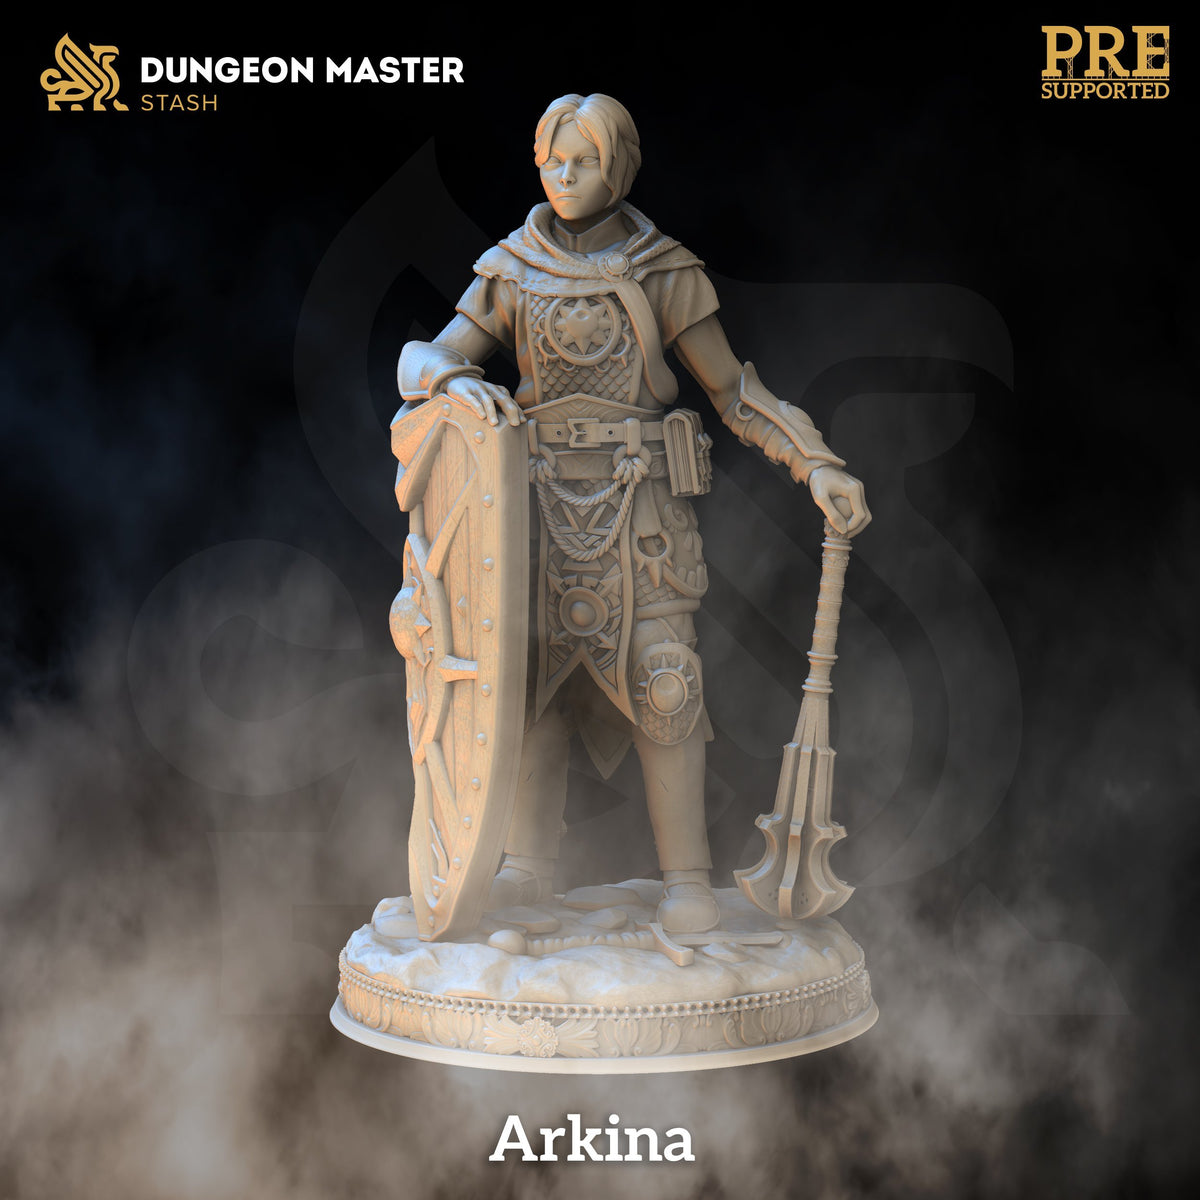 Arkina - The Printable Dragon